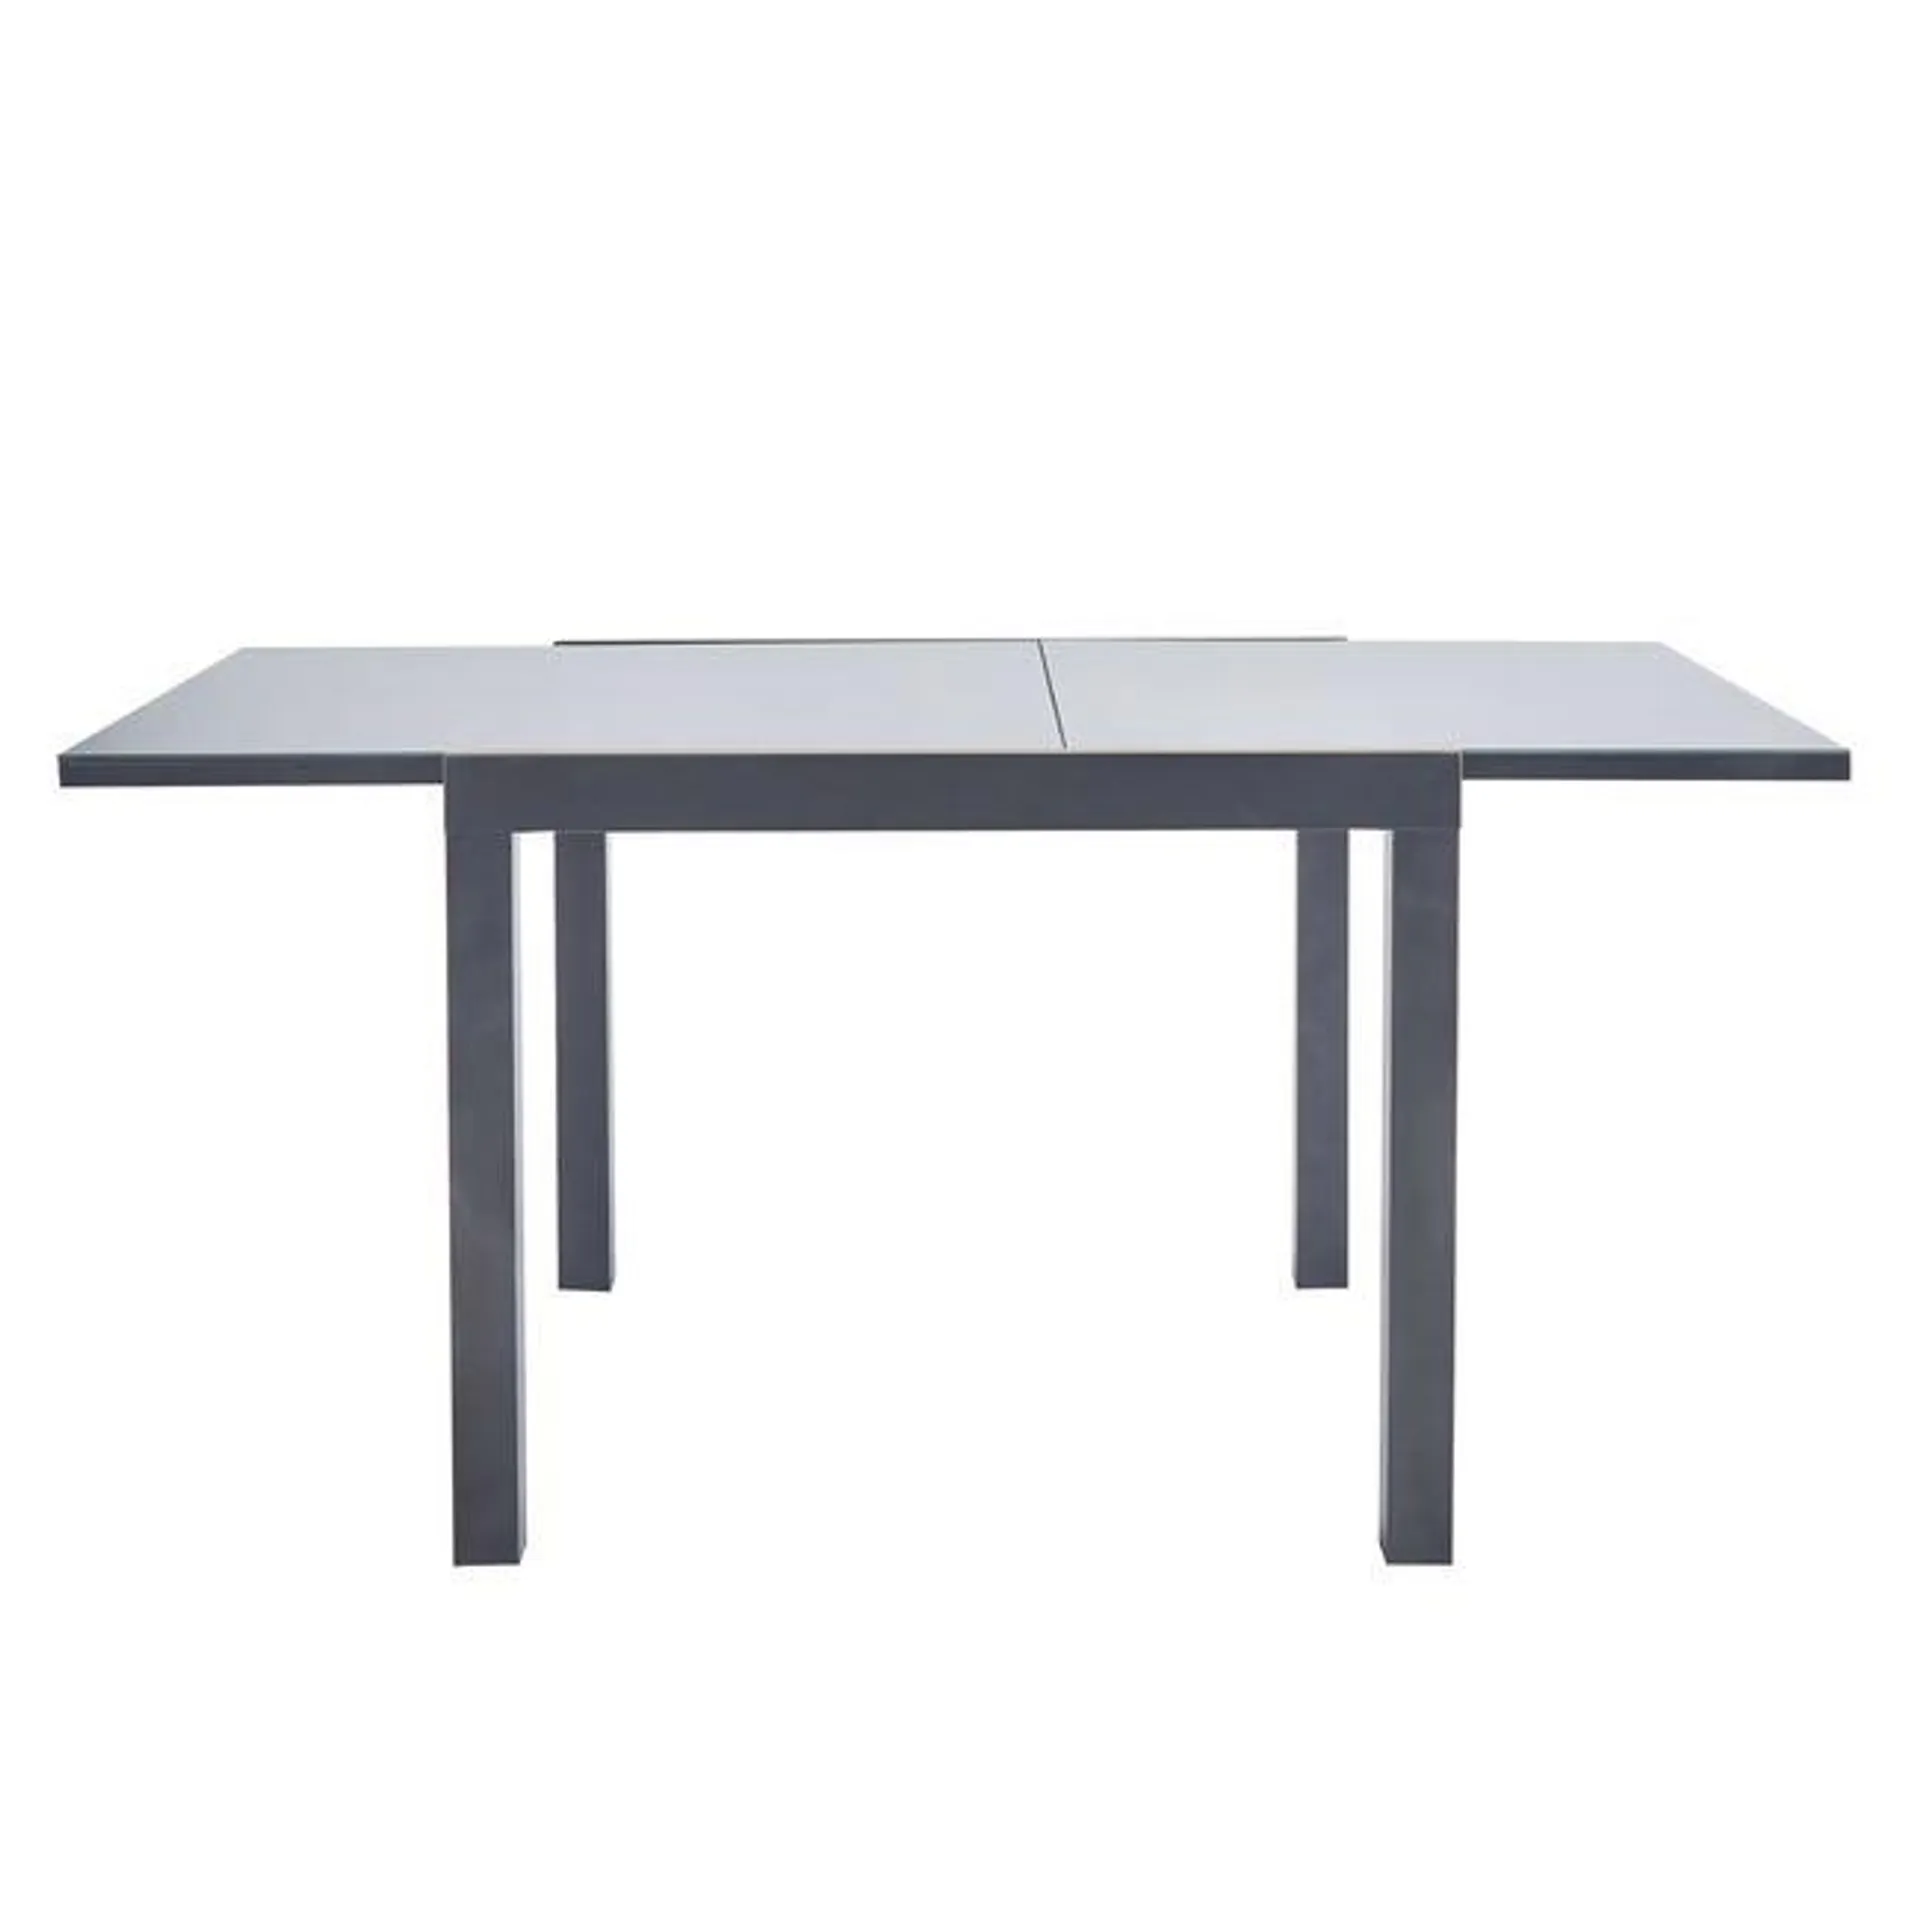 Table de jardin NATERIAL Lyra rectangulaire gris / argent 6 personnes